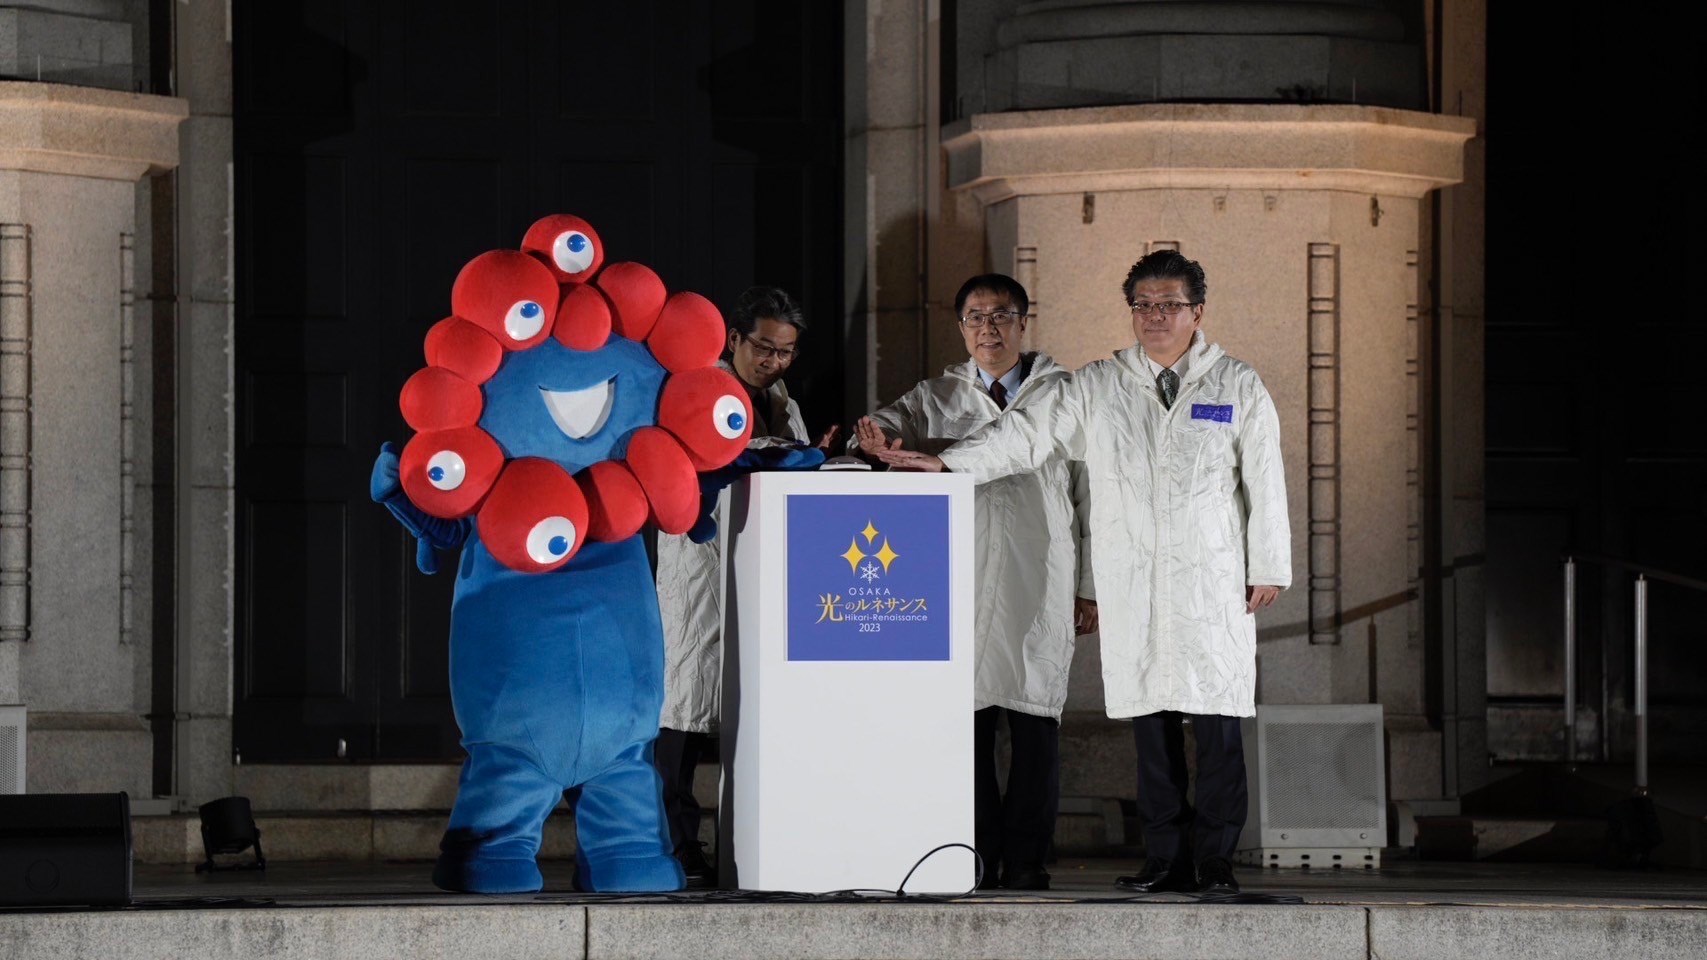 第5回 大阪・光の饗宴 台湾台南市長も点灯式に出席